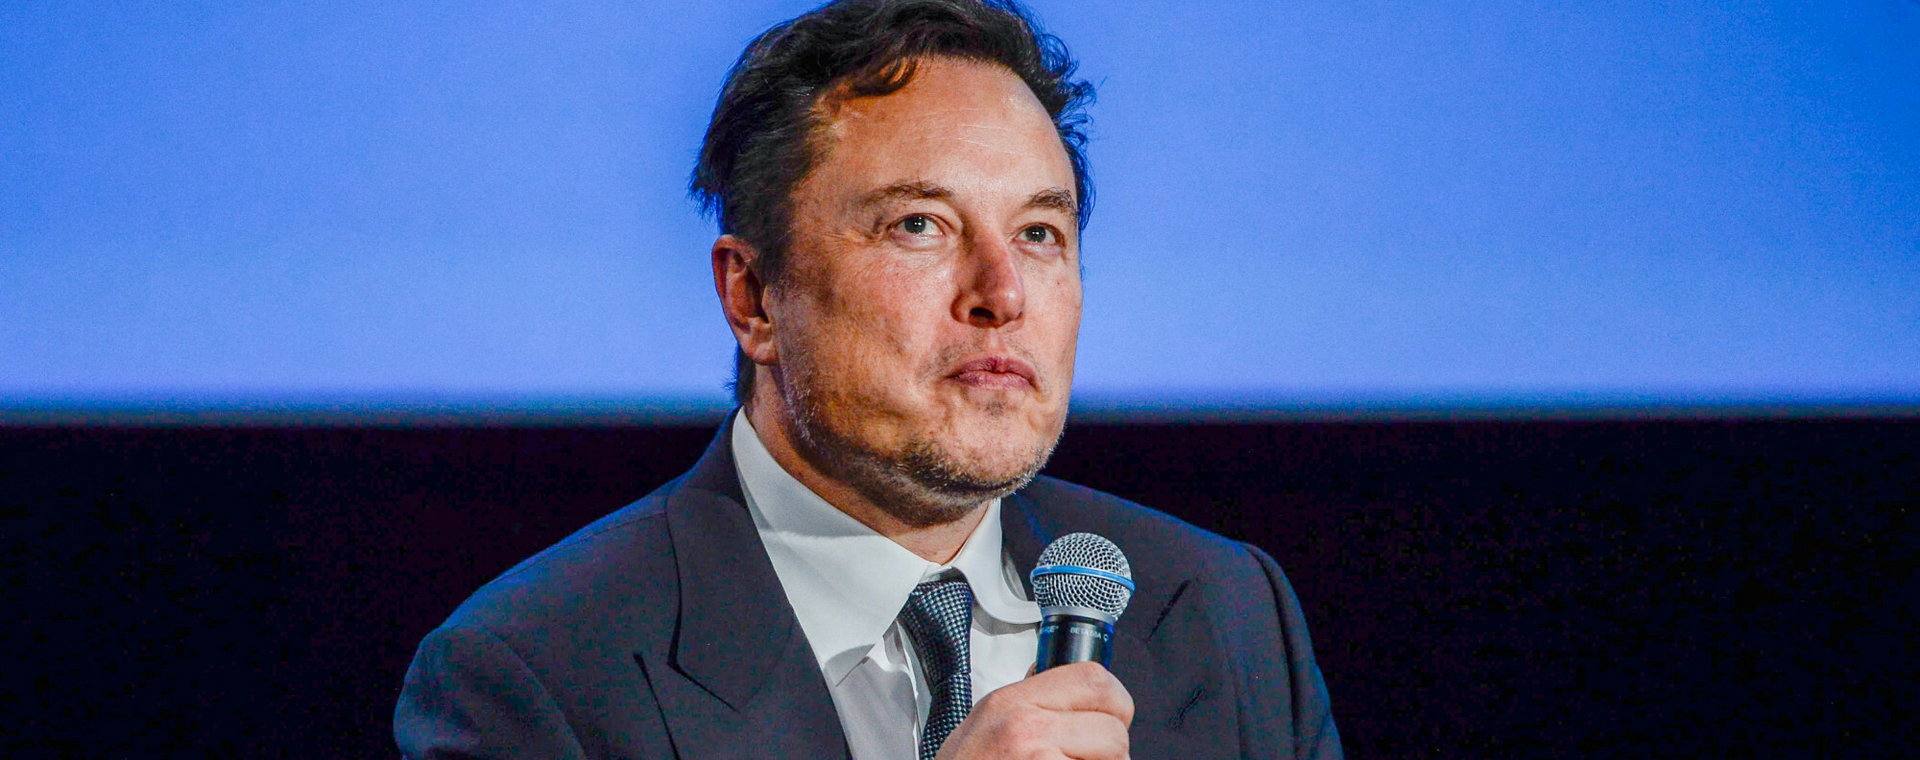 Elon Musk nie ukrywa, że nie jest miłośnikiem pracy zdalnej.